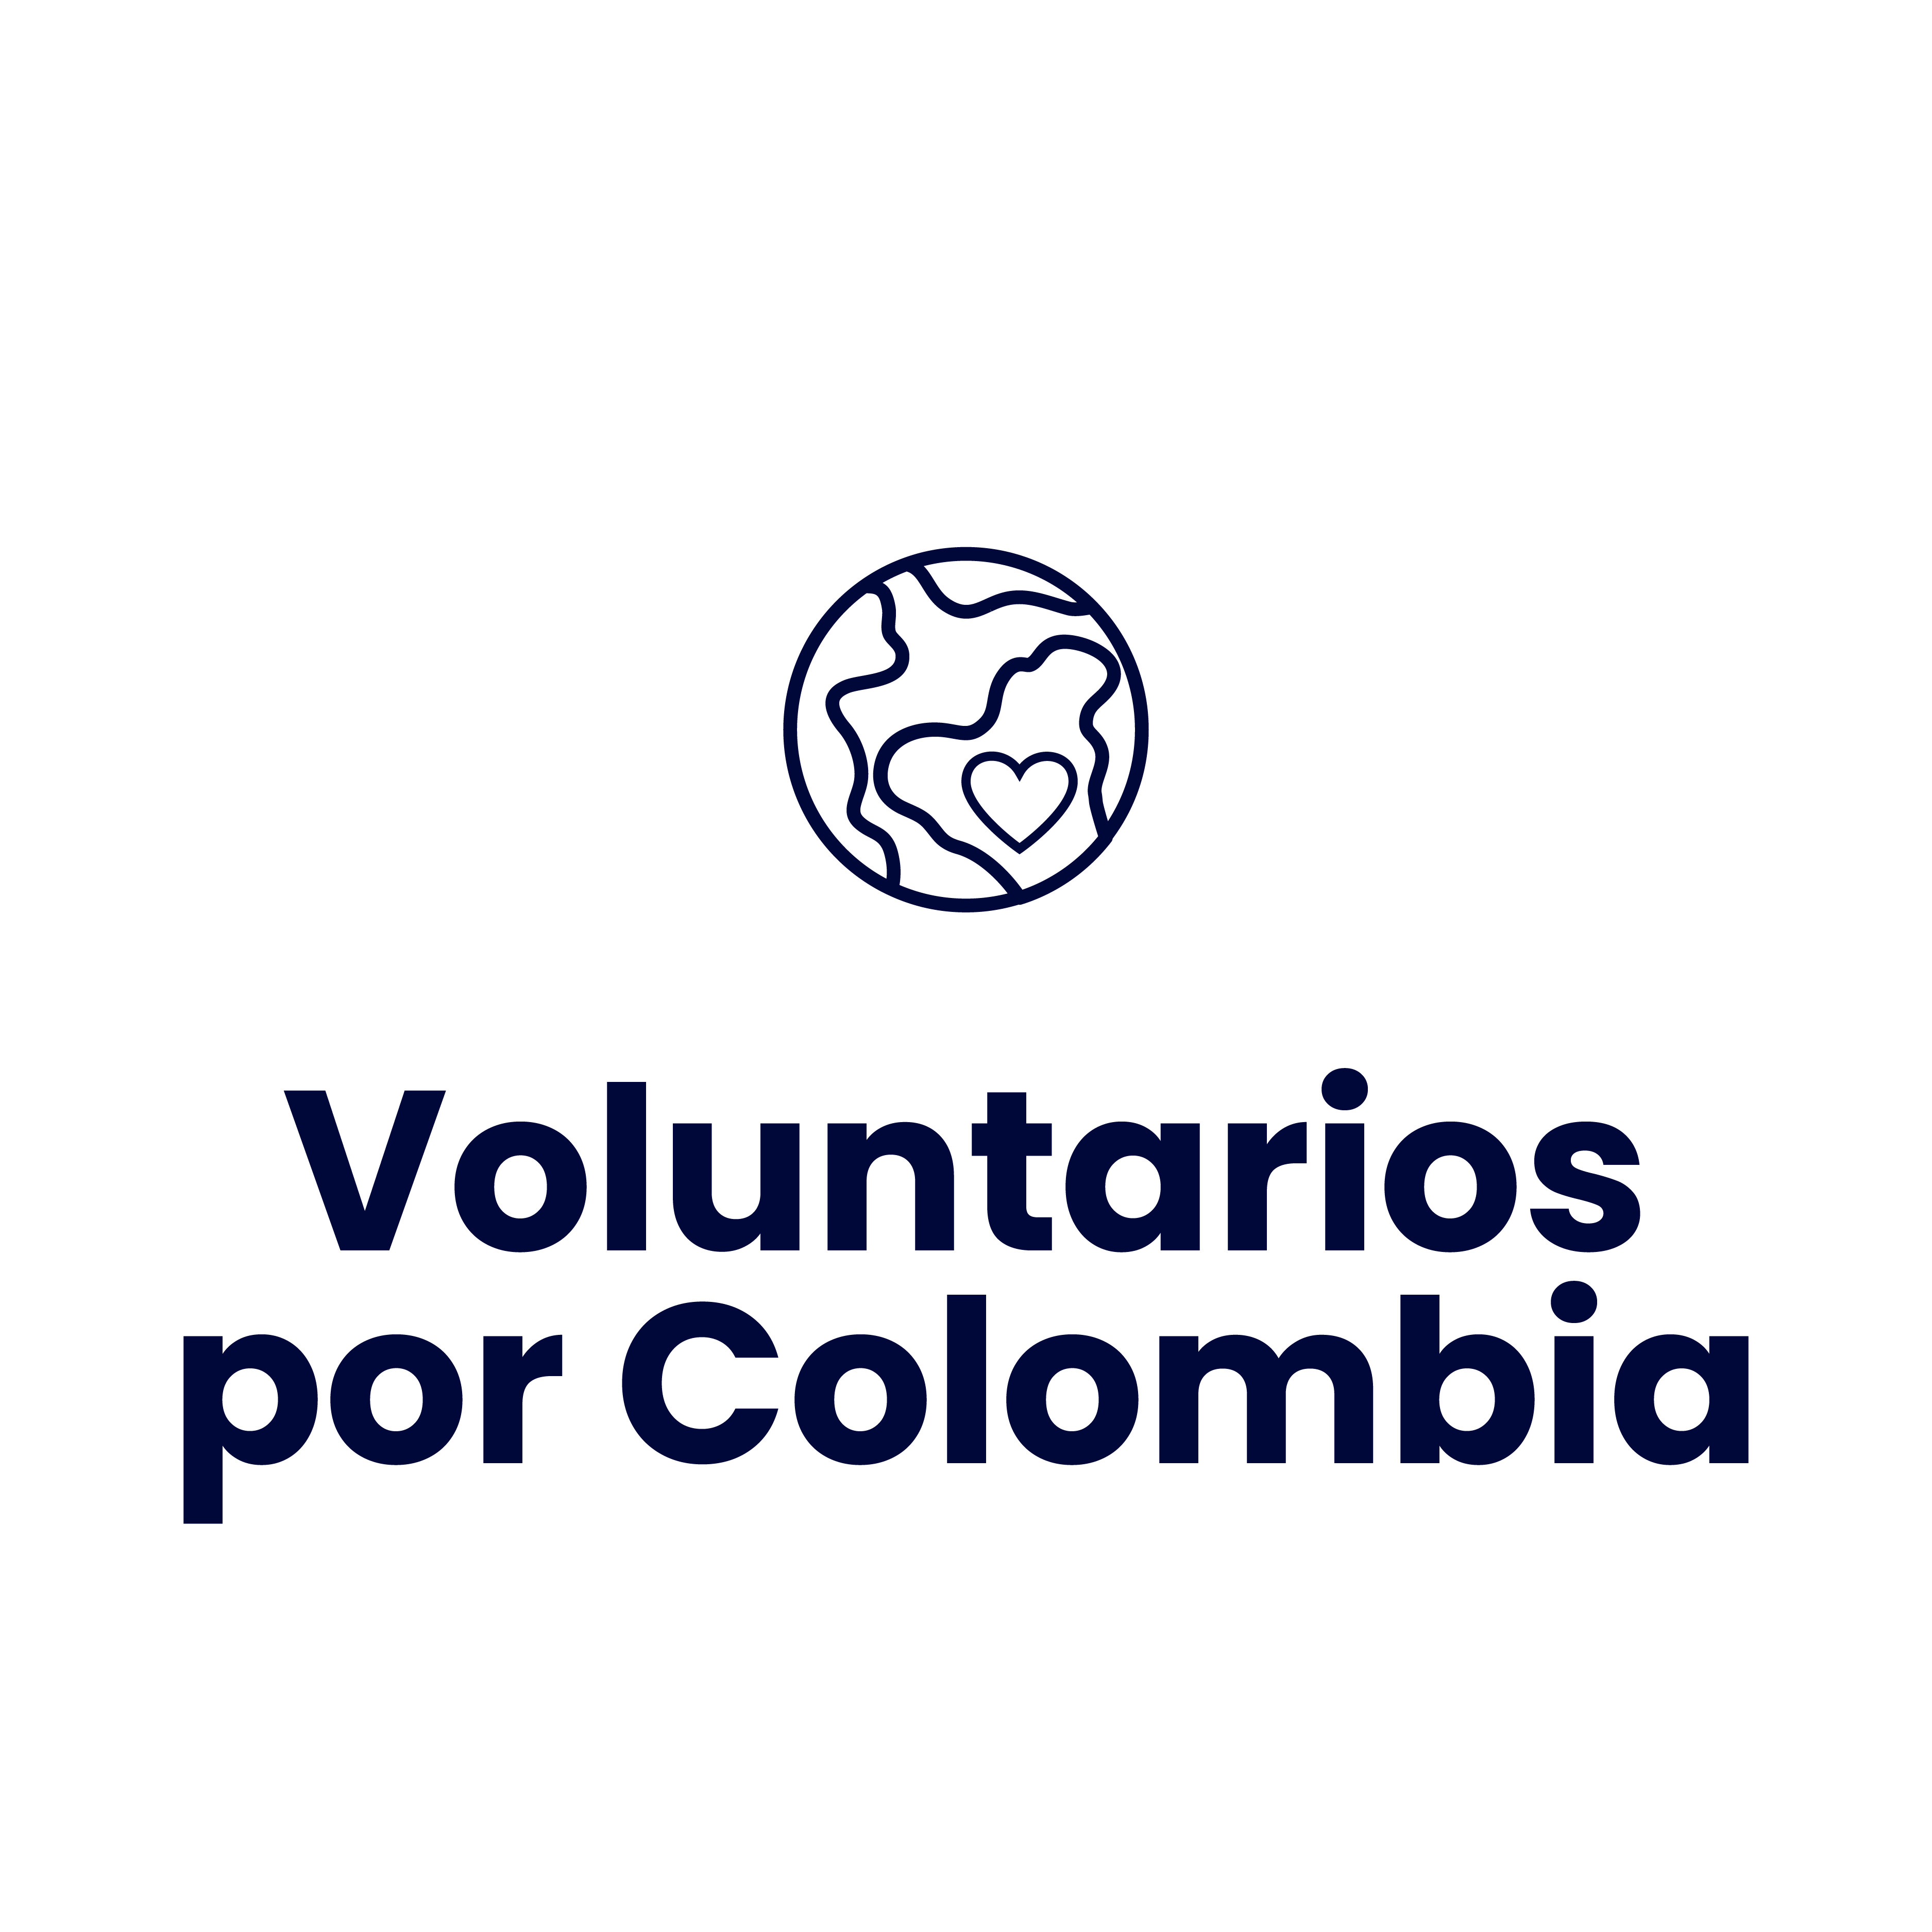 Voluntarios por Colombia